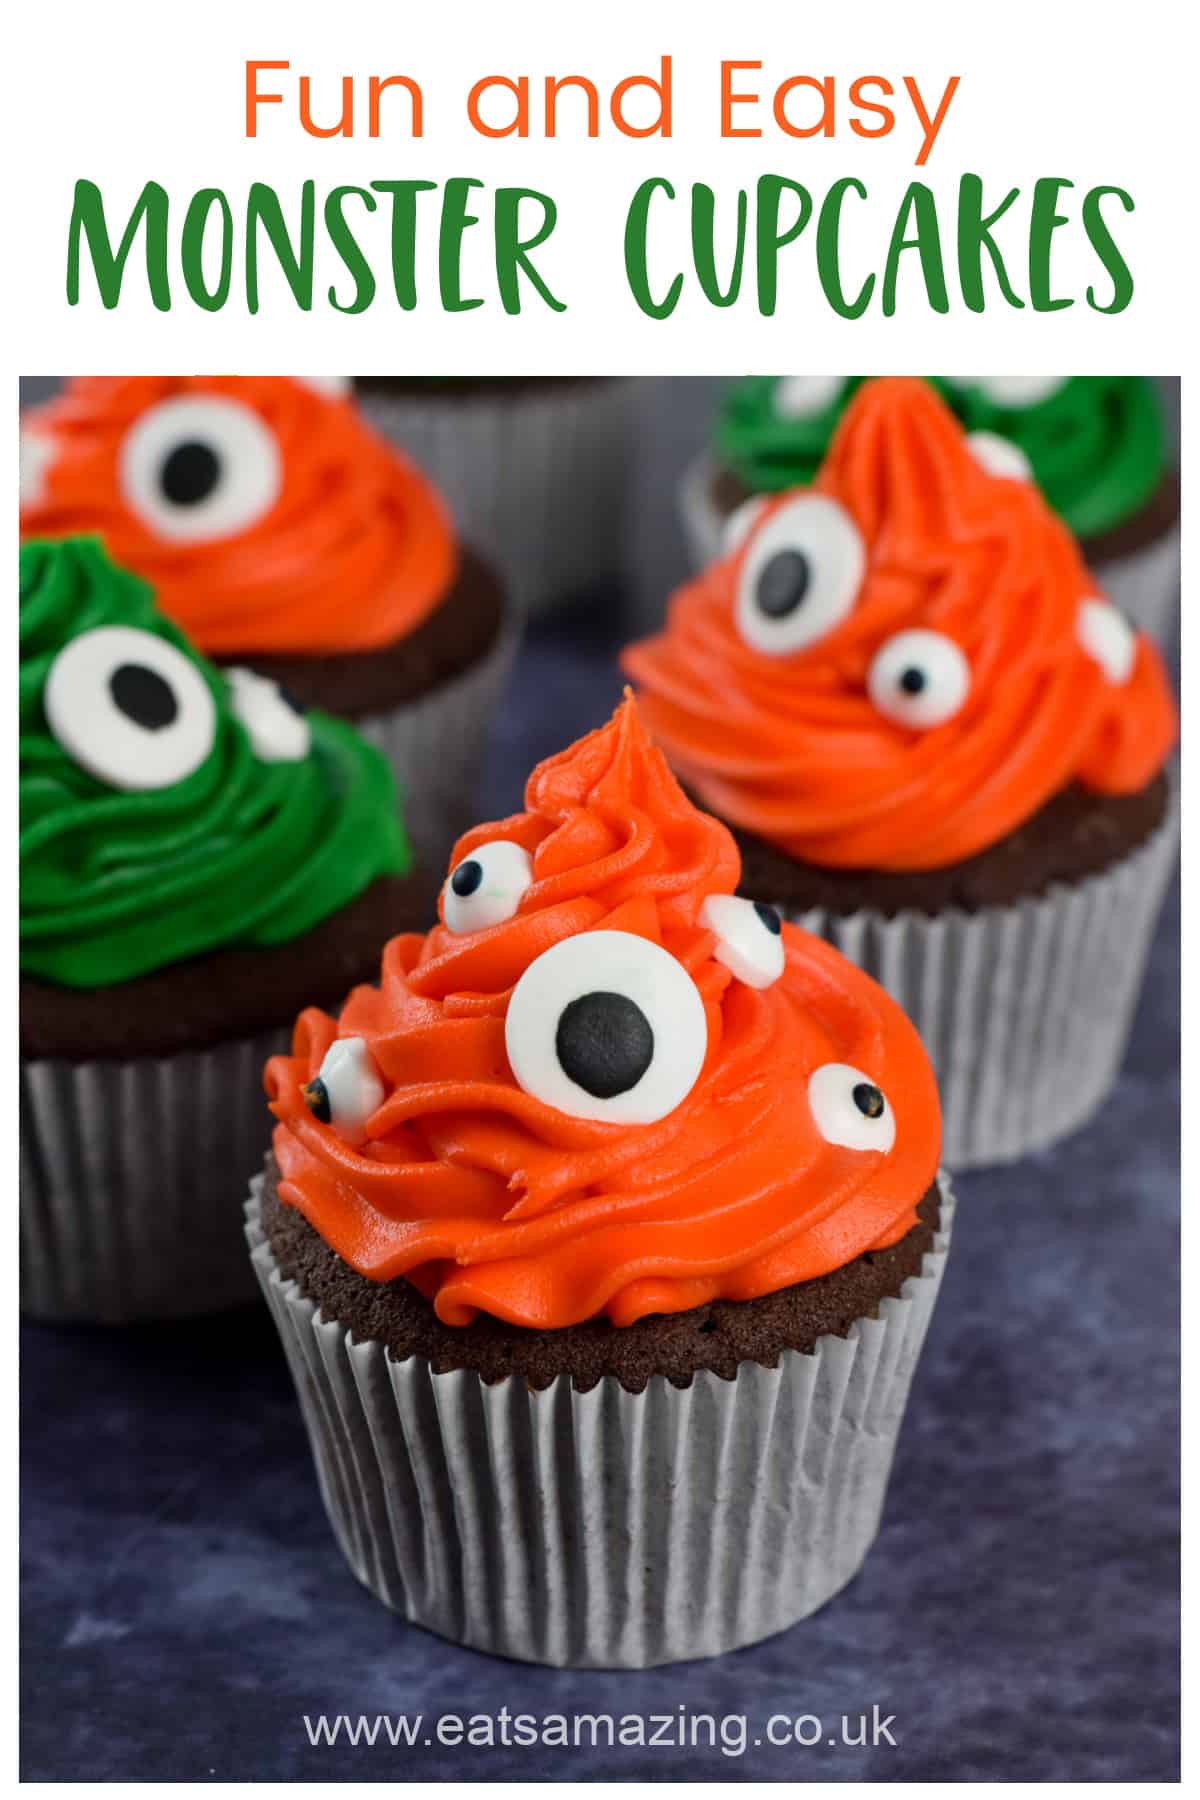 Cómo hacer cupcakes de monstruos fáciles y divertidos - Receta para hornear de Halloween para niños